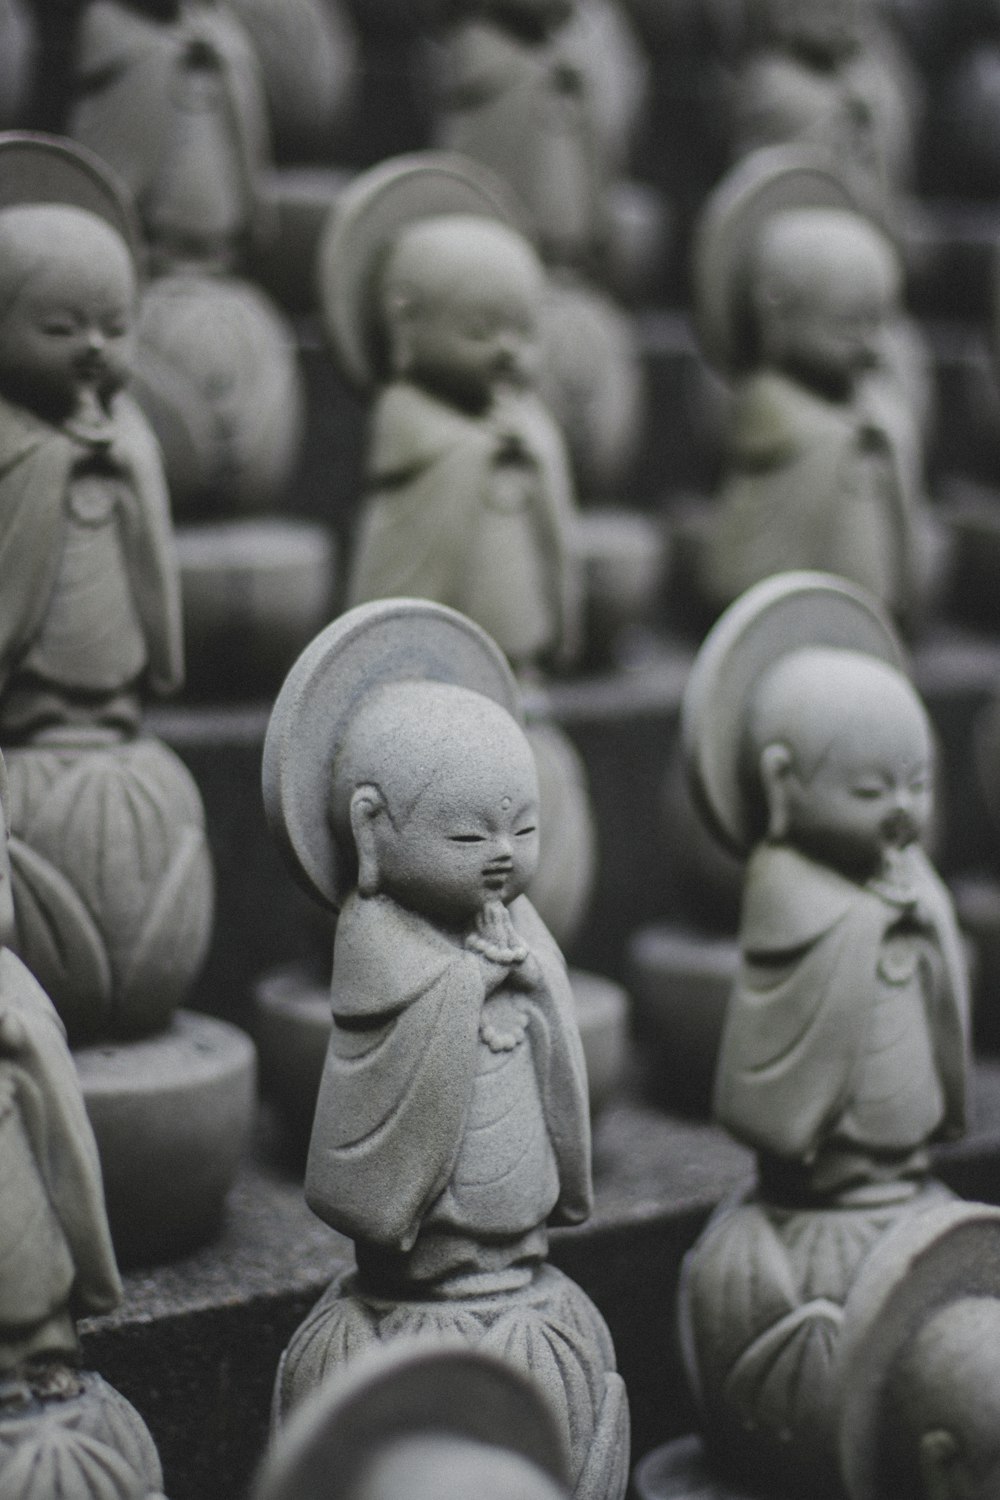 Un groupe de statues de Bouddha assises les unes à côté des autres